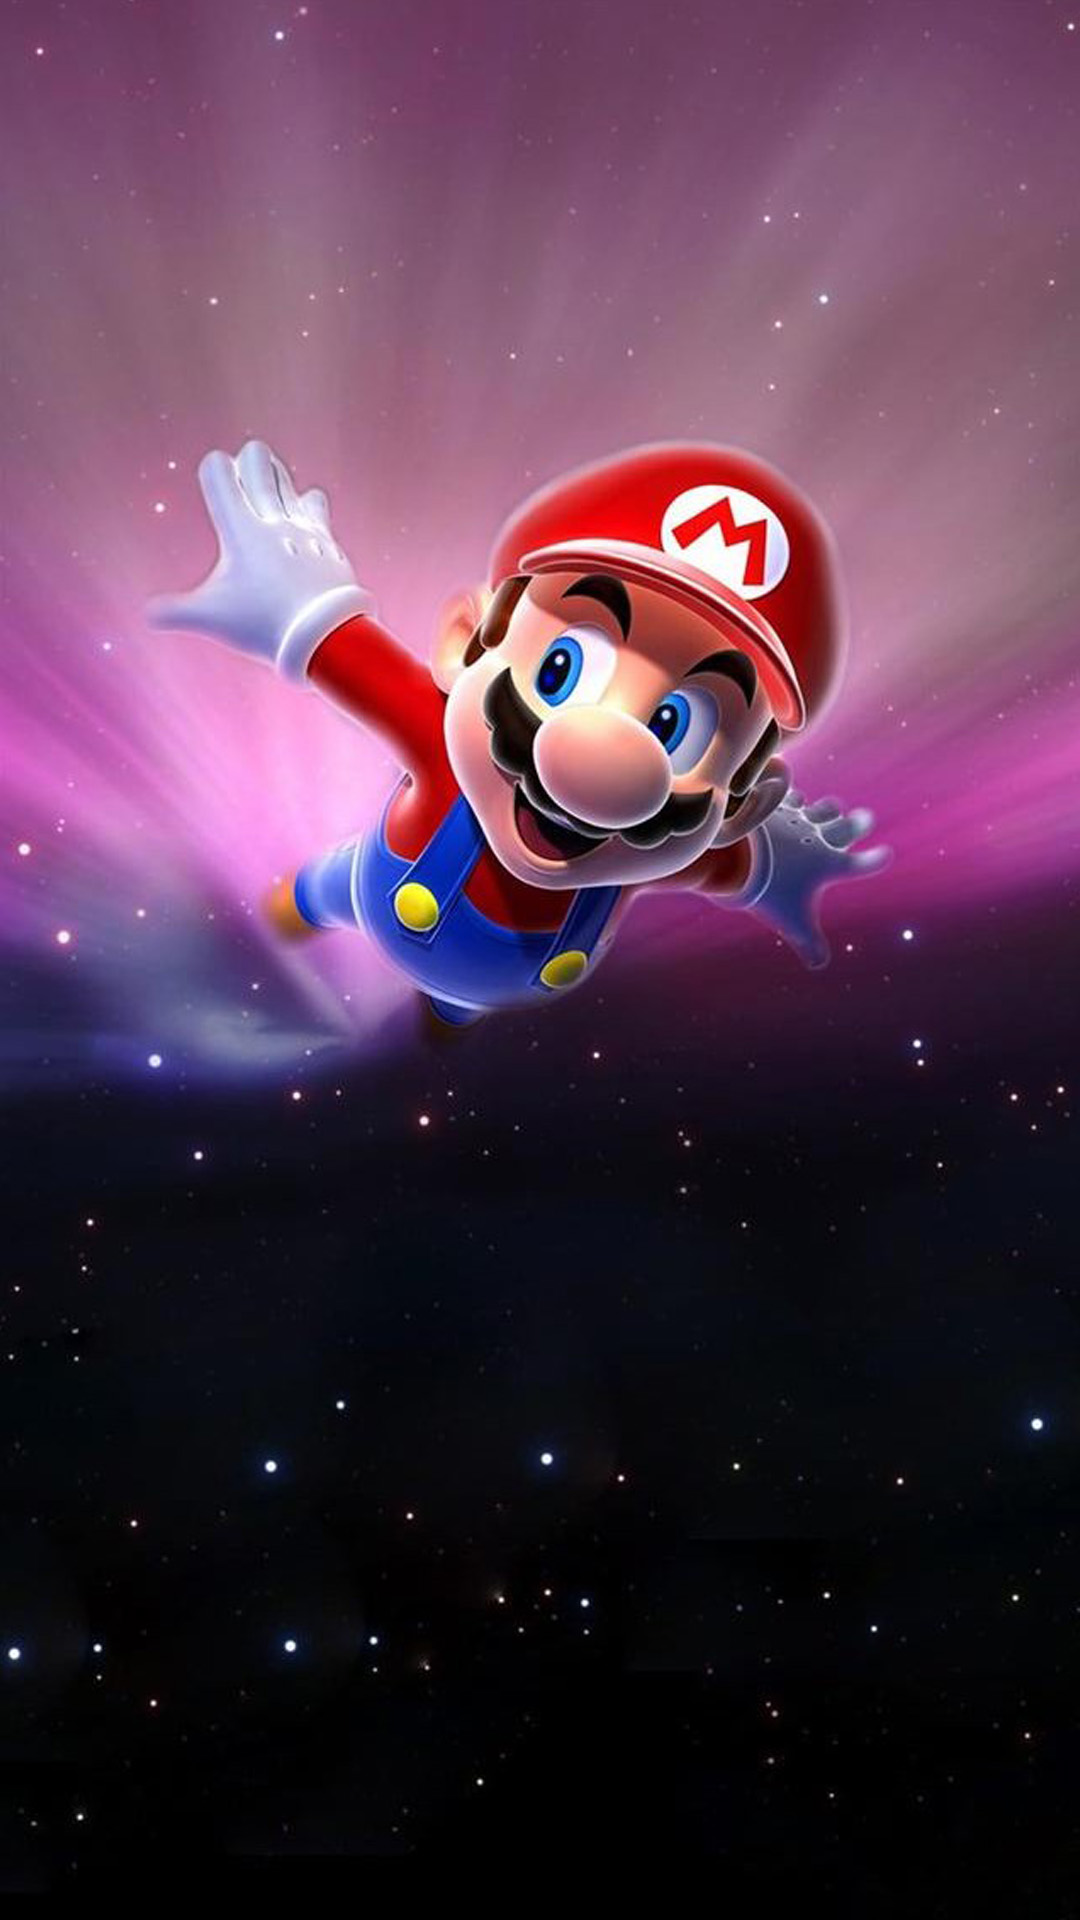 Mario flying in space Mac